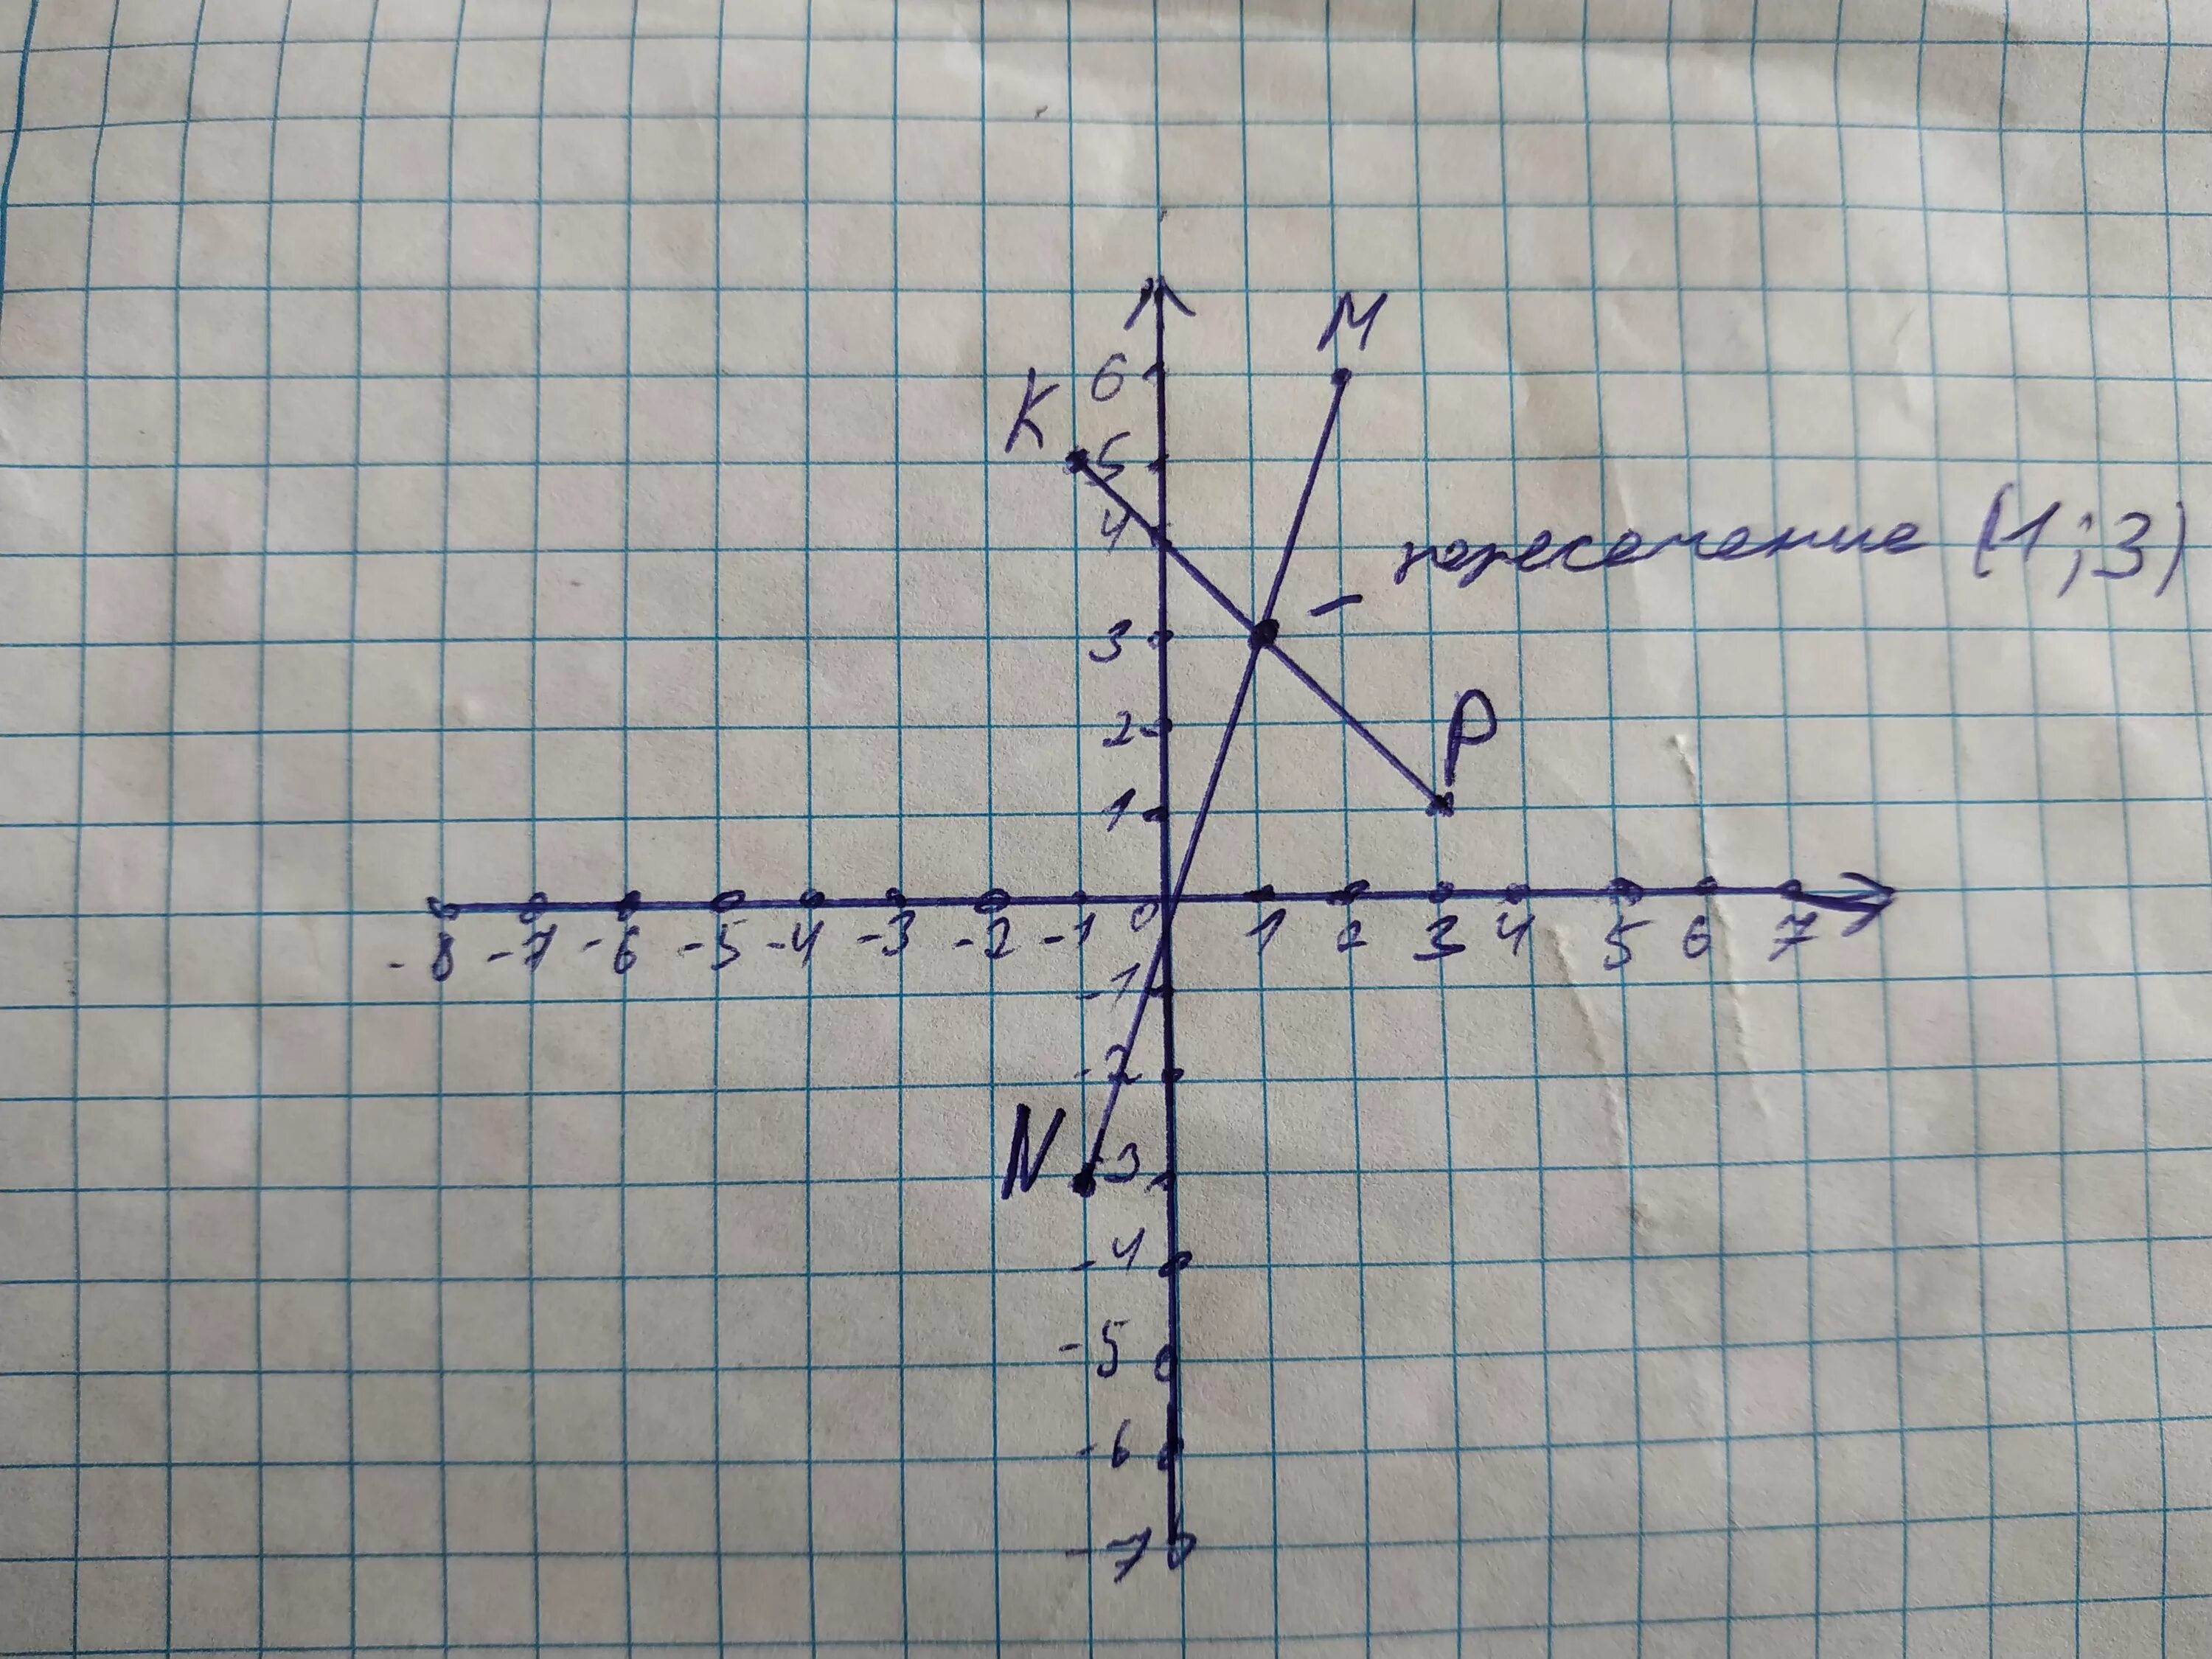 Отметьте на координатной плоскости точки 2 5. Отметьте на координатной плоскости точки. Отметьте на координатной плоскости точки m. Отметьте на координатной плоскости точки м 1 3 и n -3 -1. Отметьте на координатной плоскости точки м -6 3.